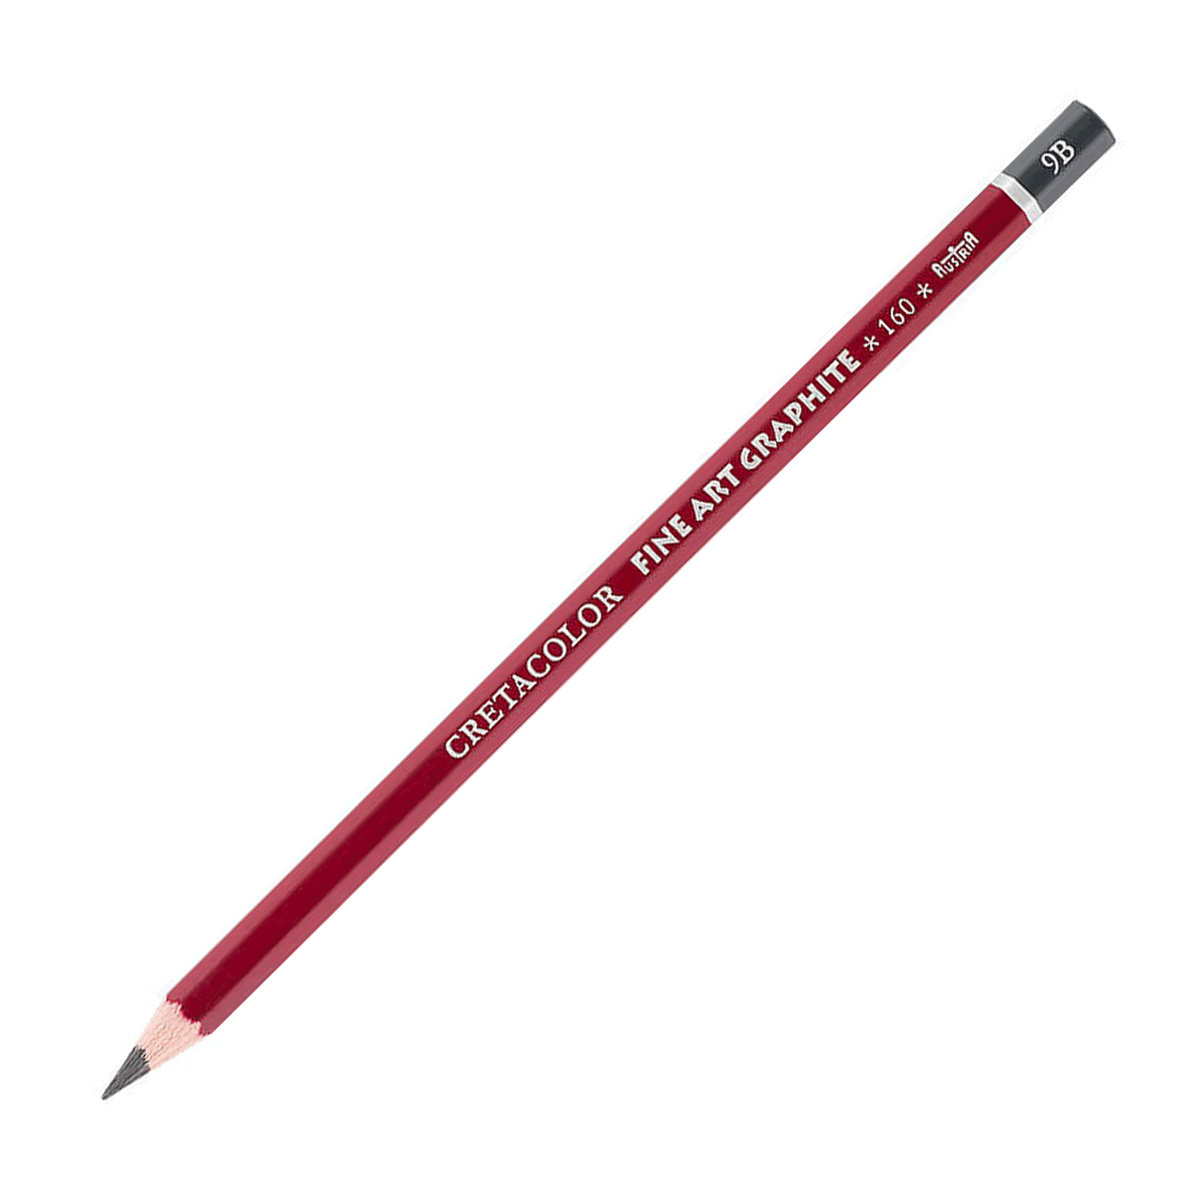 Cretacolor Fine Art Red Graphite Pencil - 9B